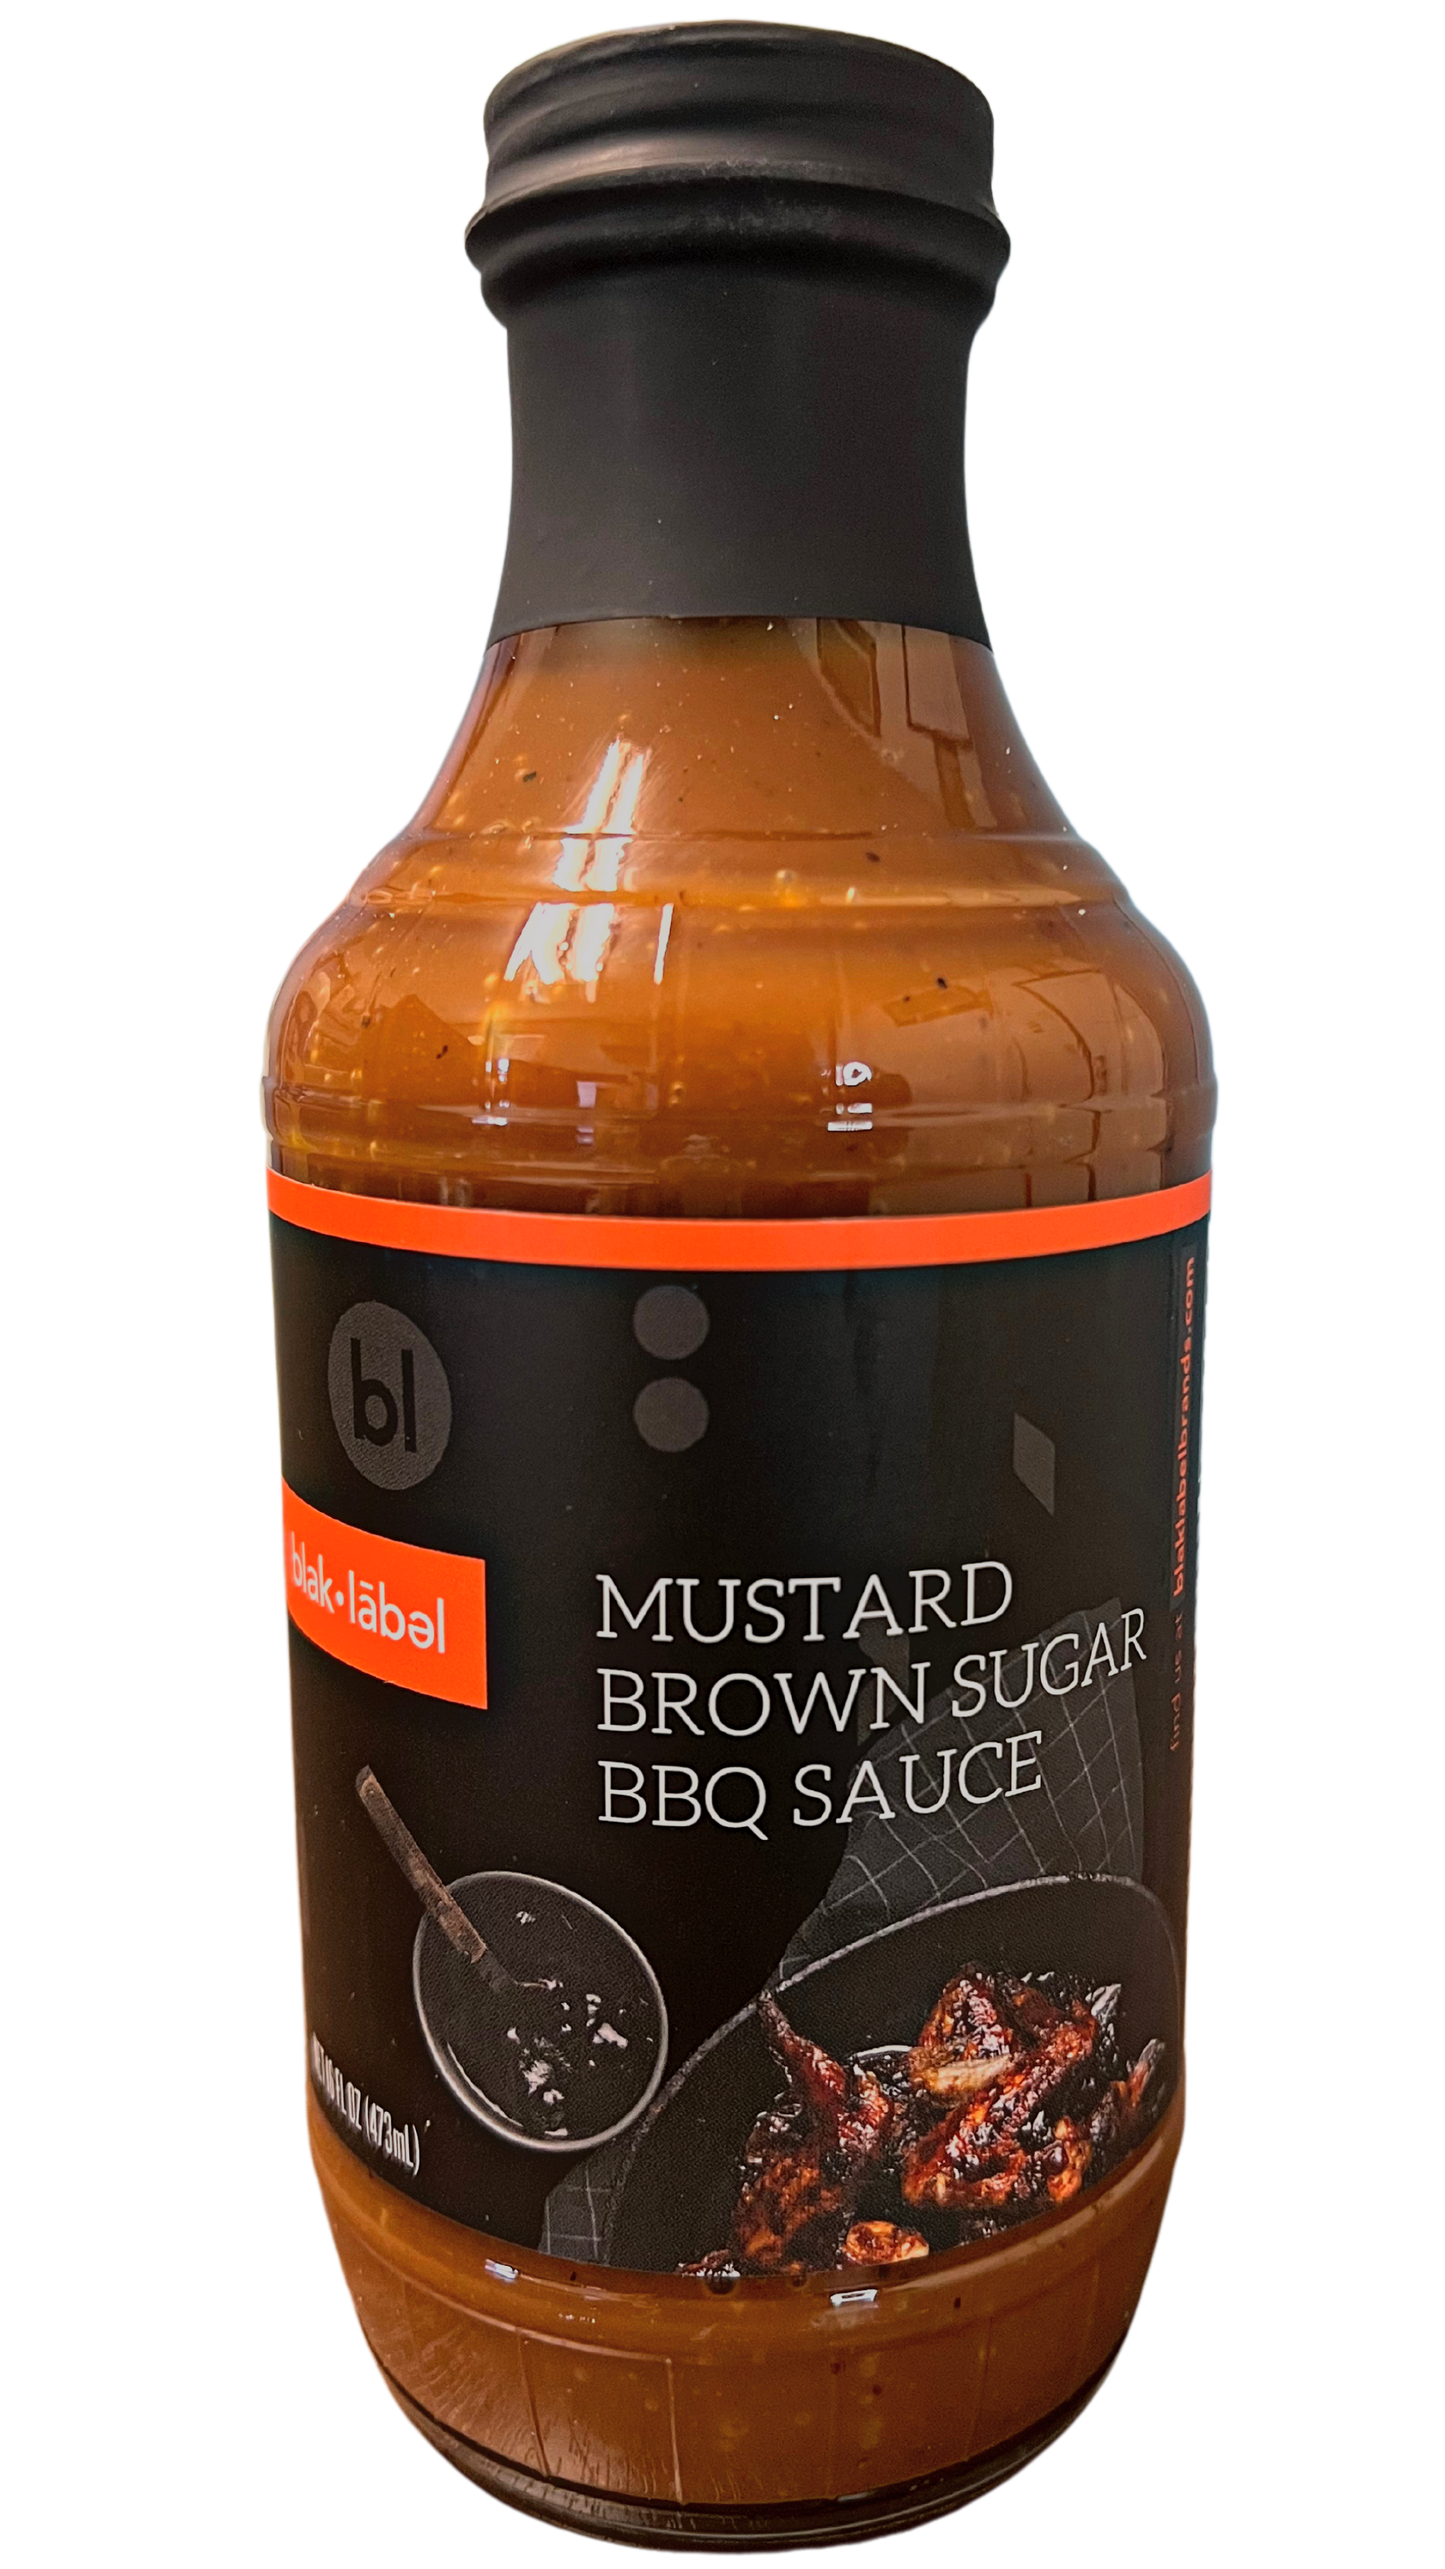 Blak - Label Mustard Brown Sugar BBQ Sauce